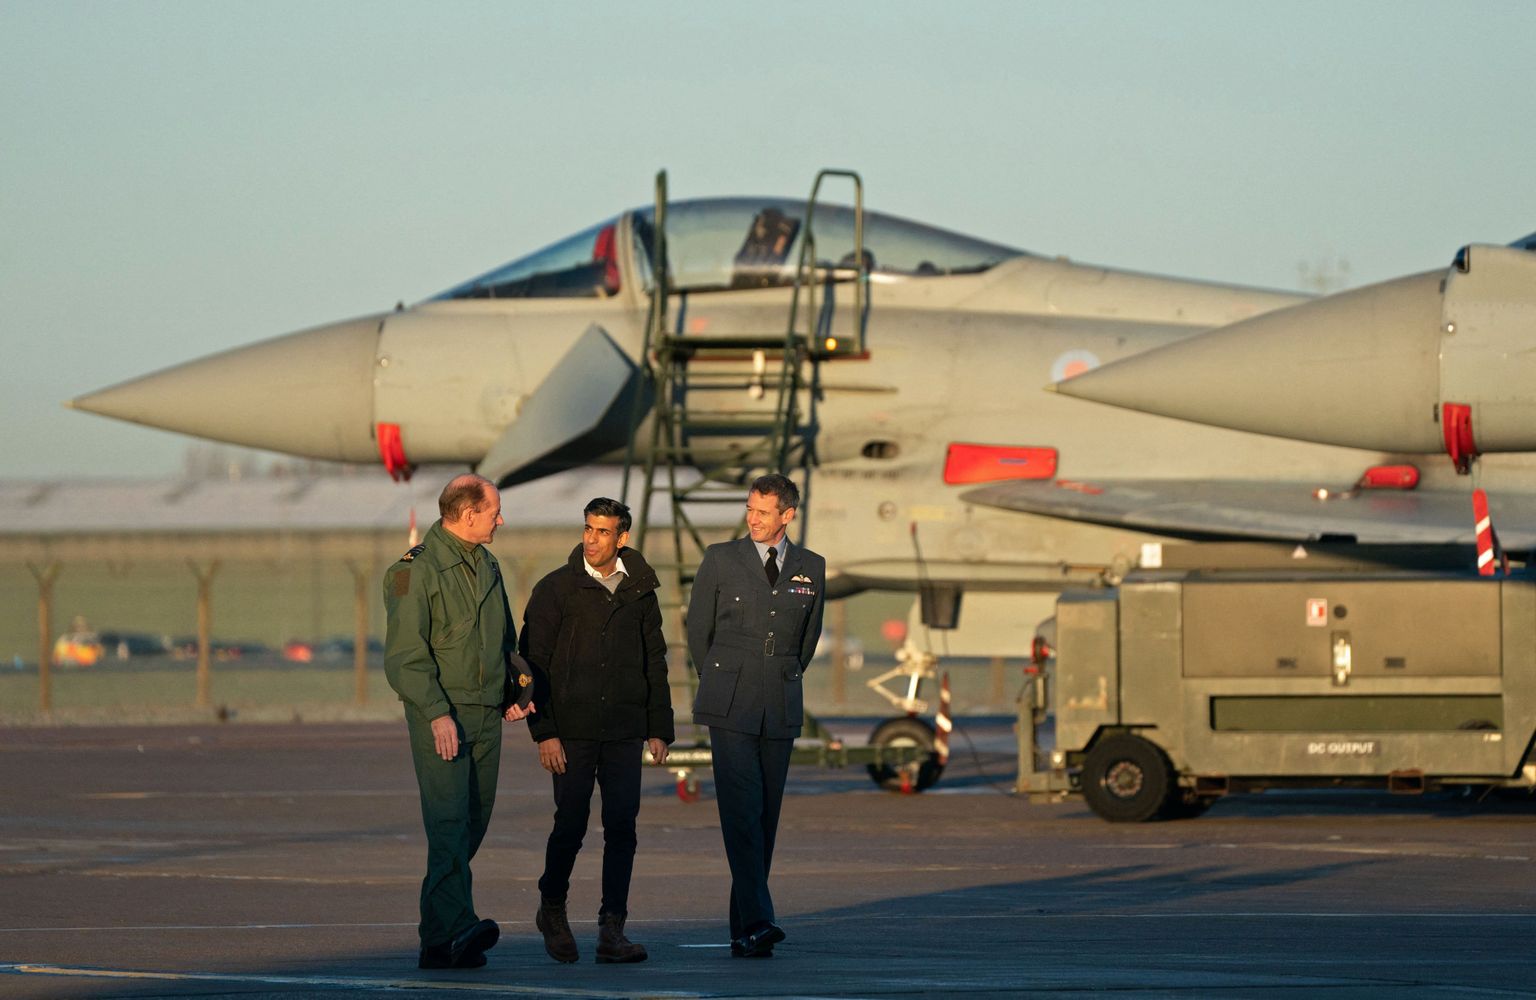 Lielbritānijas premjerministrs Riši Sunaks sarunājas ar gaisa spēku vadītāju maršalu Maiku Vīgstonu un RAF Koningsbijas vienības komandieri Billiju Kūperu